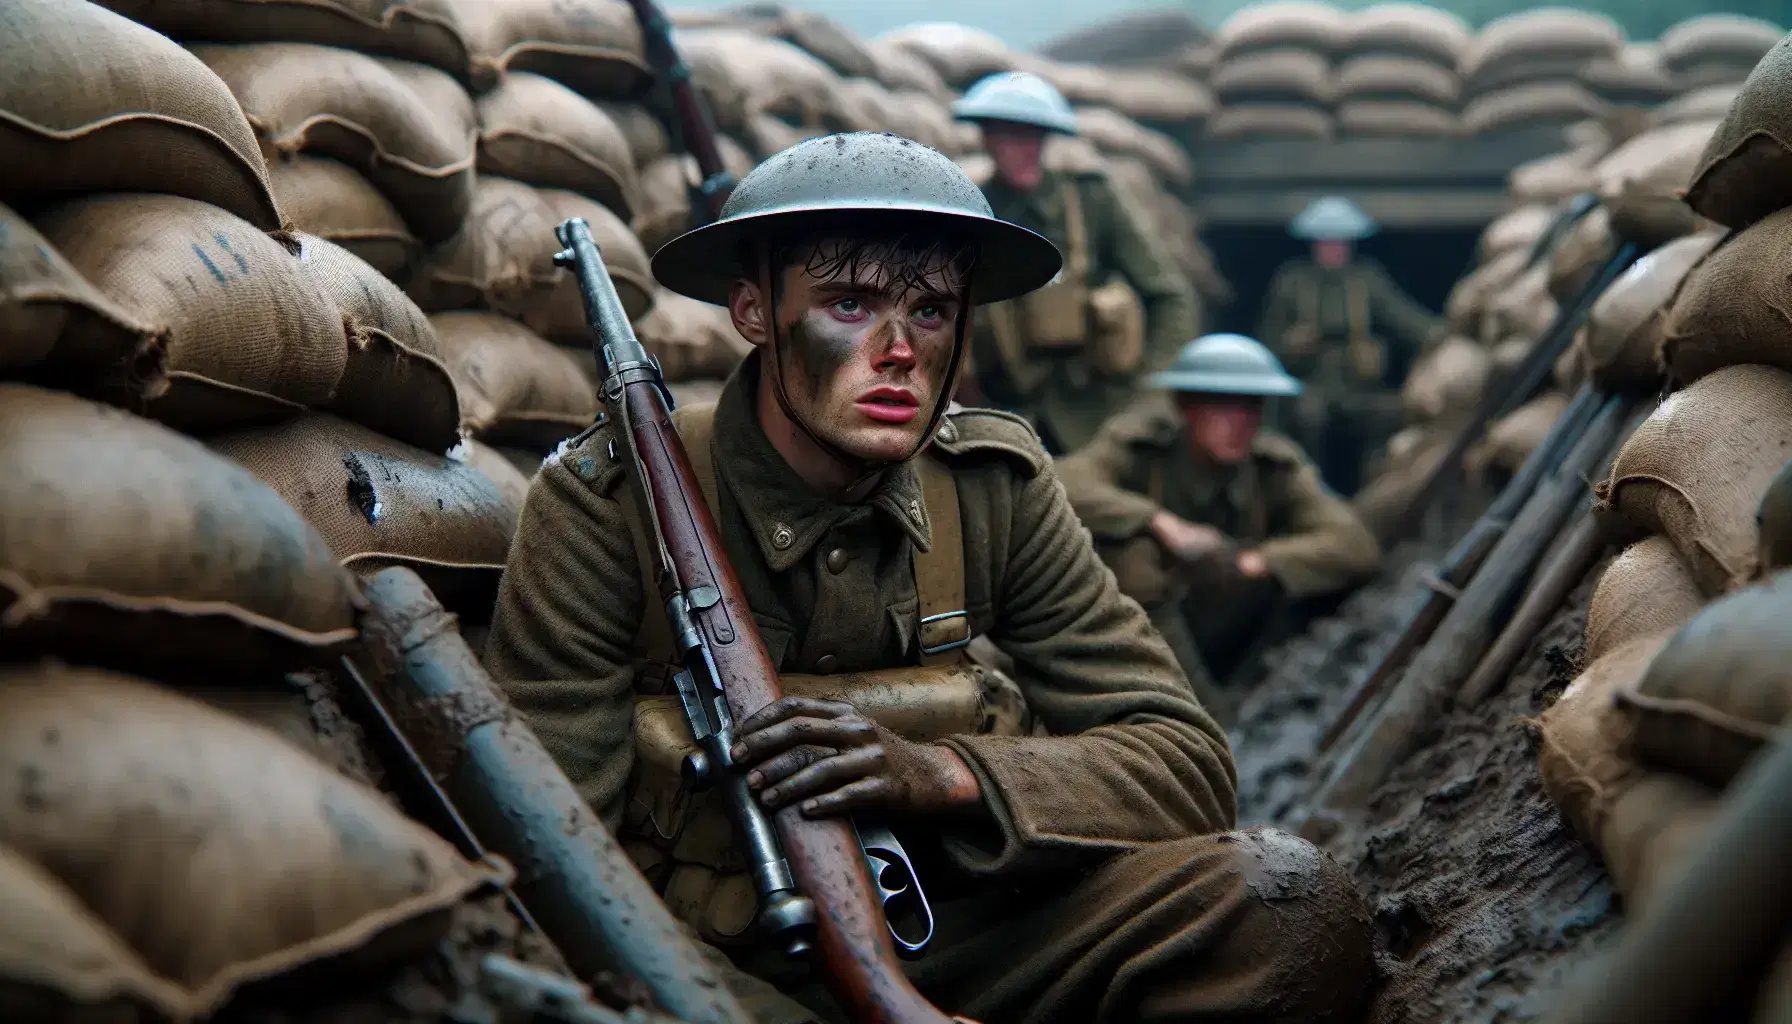 Soldato giovane in uniforme militare sporca e casco nella trincea della Prima Guerra Mondiale, circondato da sacchi di sabbia e attrezzatura militare.